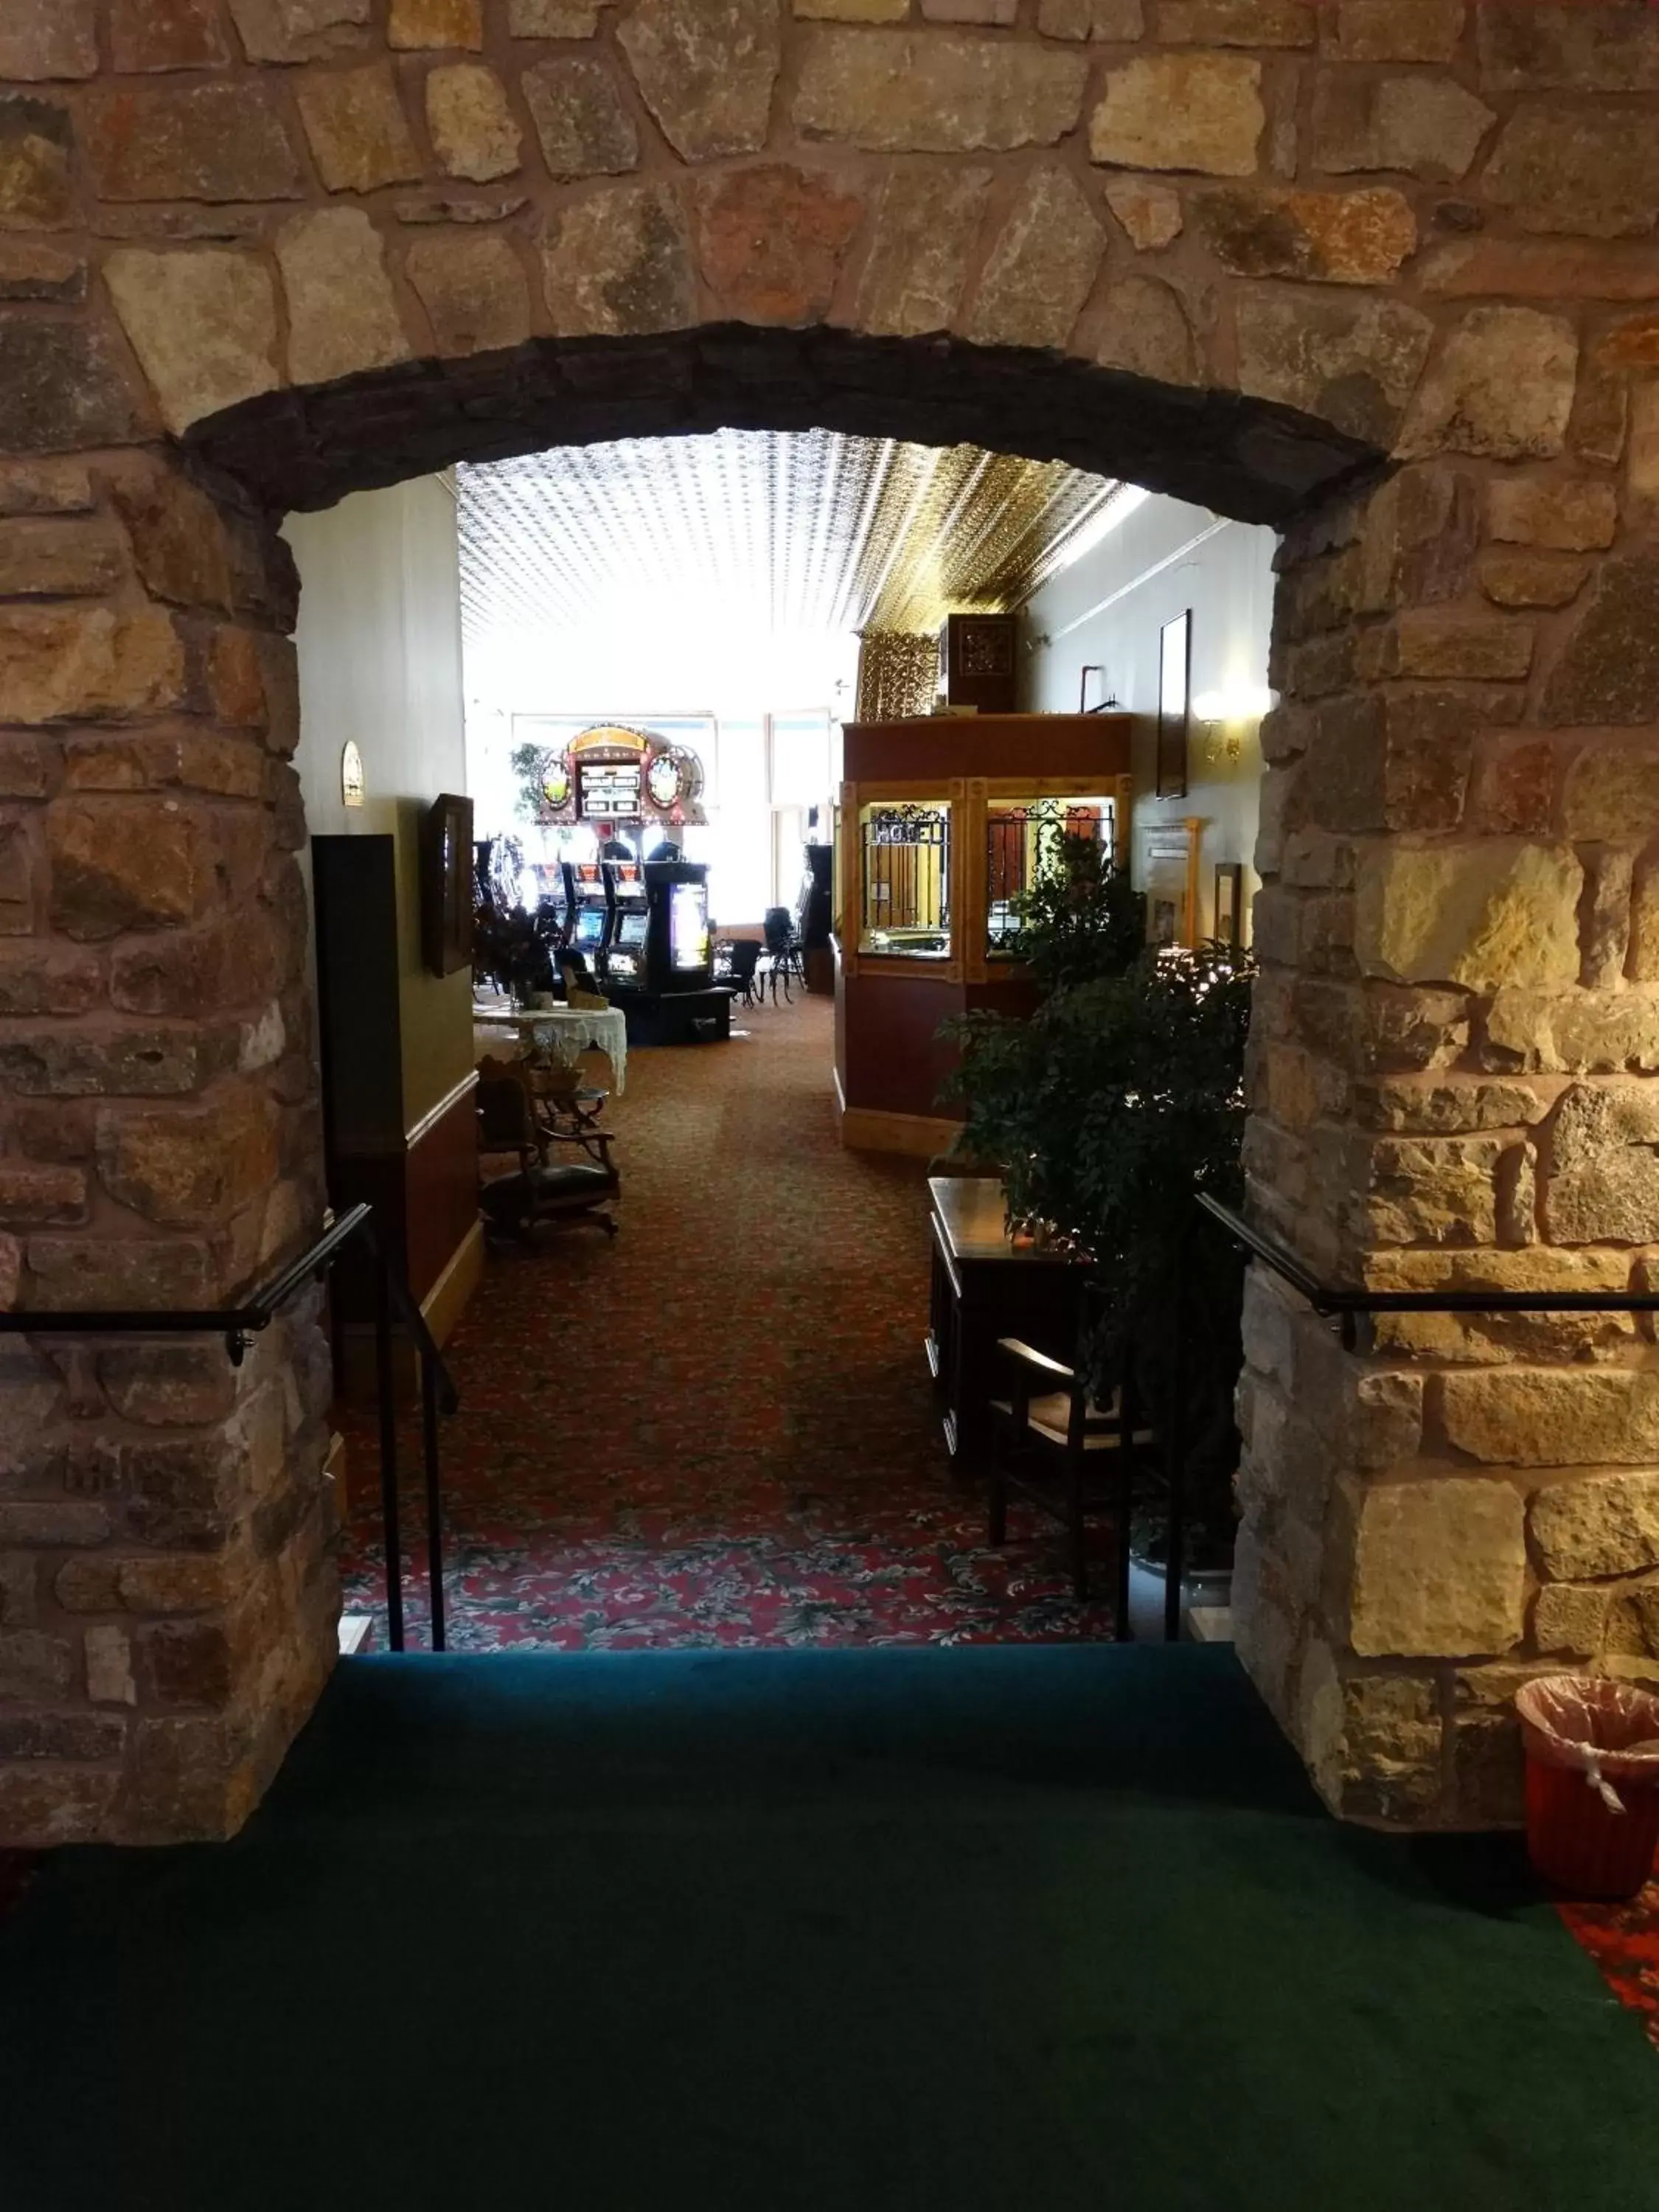 Lobby or reception in Historic Iron Horse Inn - Deadwood